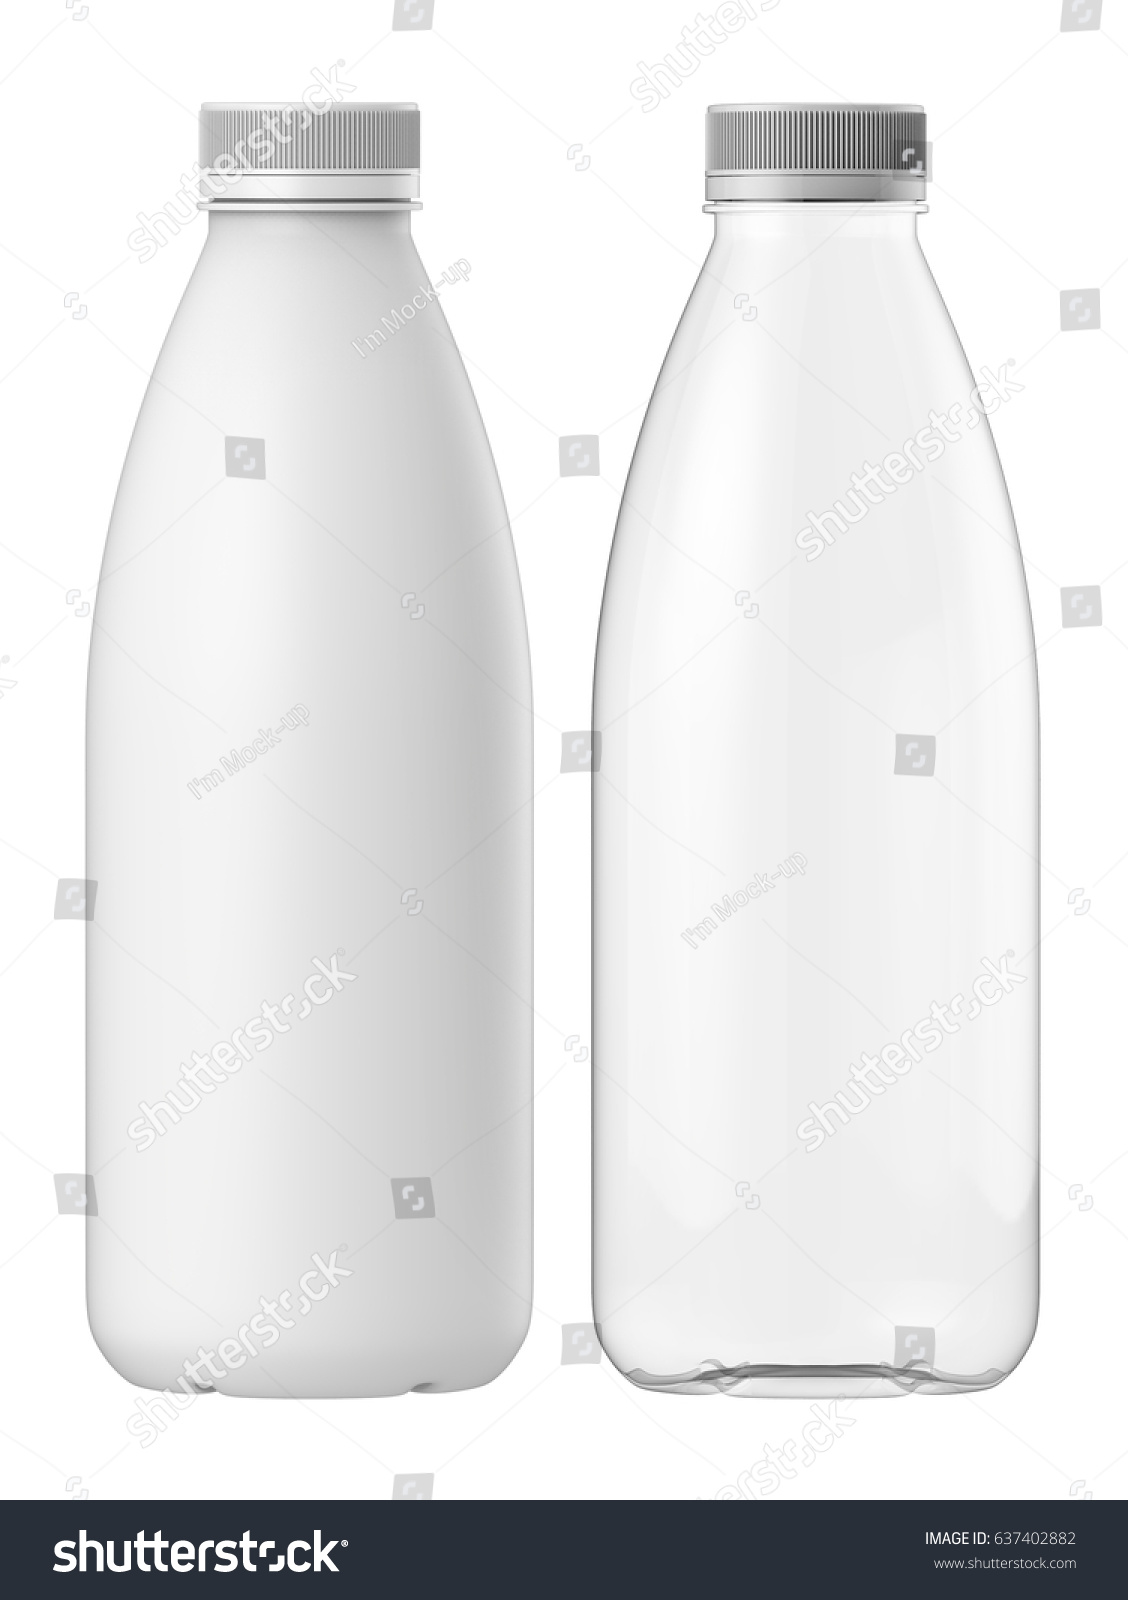 Download 3d Rendering Clear Plastic Bottle Matte Stock Illustration 637402882